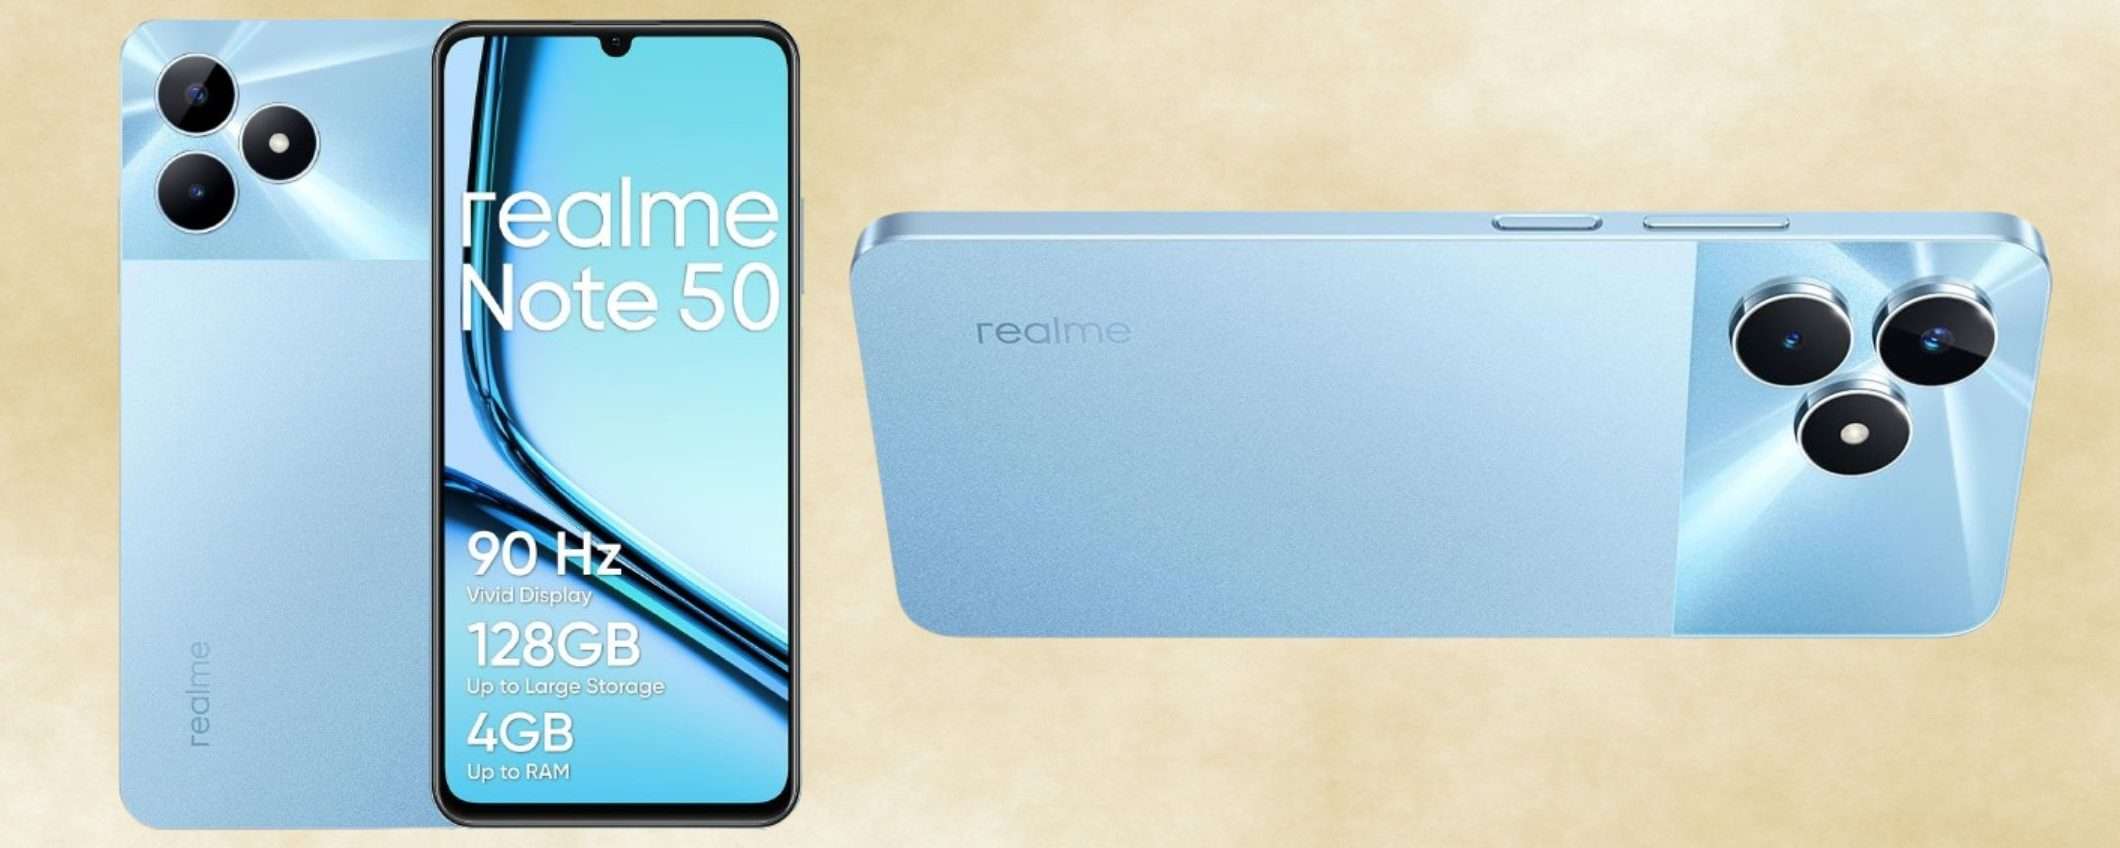 Realme Note 50 128GB a 78€ è STREPITOSO: display 90Hz e batteria 5000 mAh